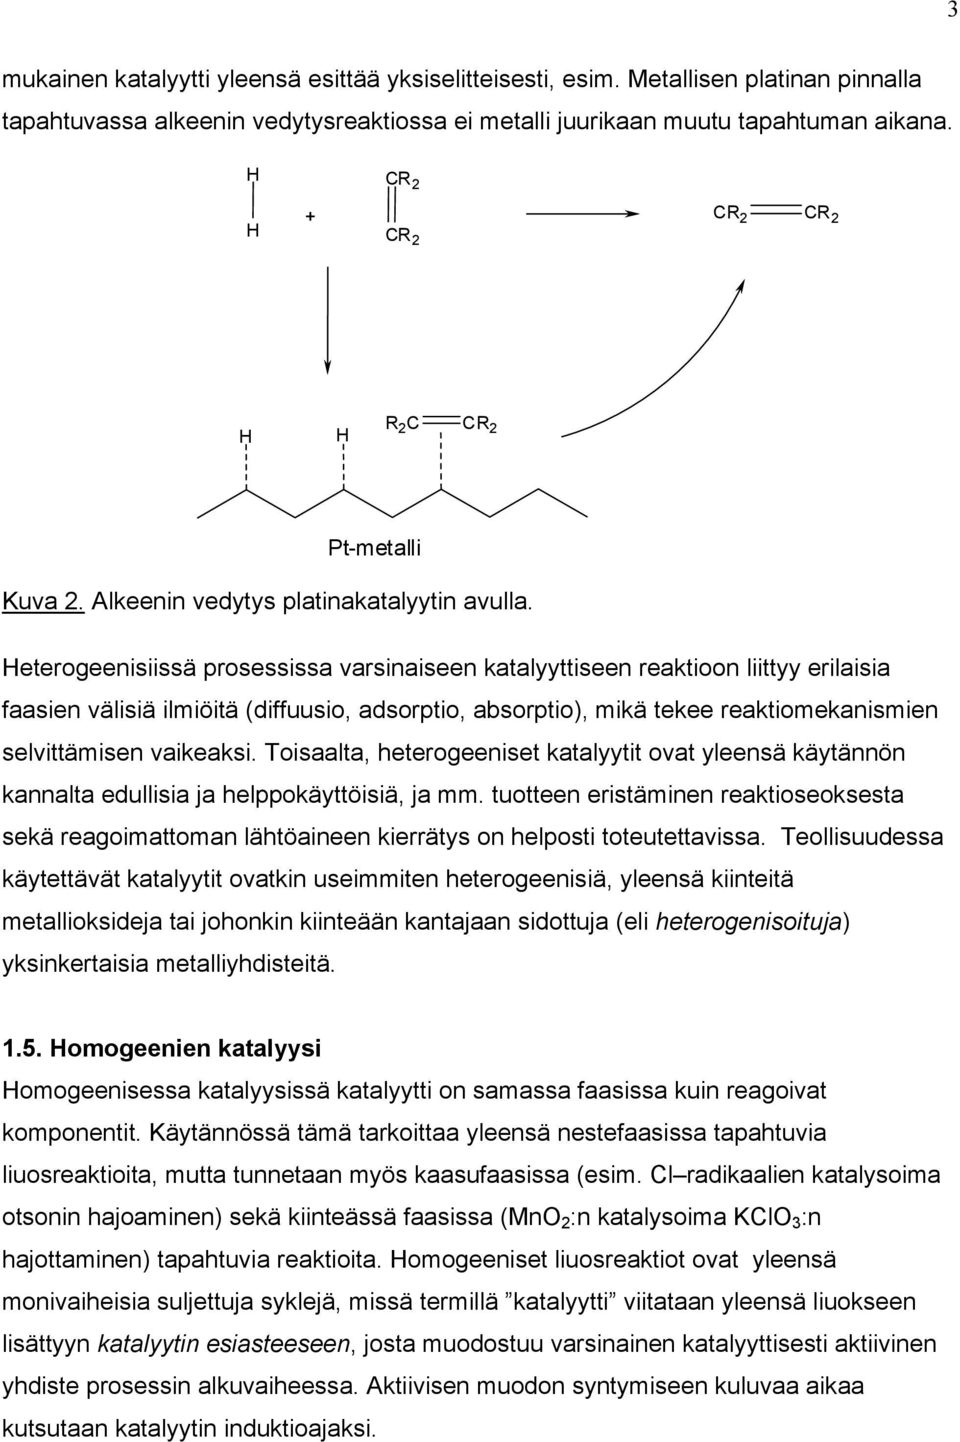 eterogeenisiissä prosessissa varsinaiseen katalyyttiseen reaktioon liittyy erilaisia faasien välisiä ilmiöitä (diffuusio, adsorptio, absorptio), mikä tekee reaktiomekanismien selvittämisen vaikeaksi.